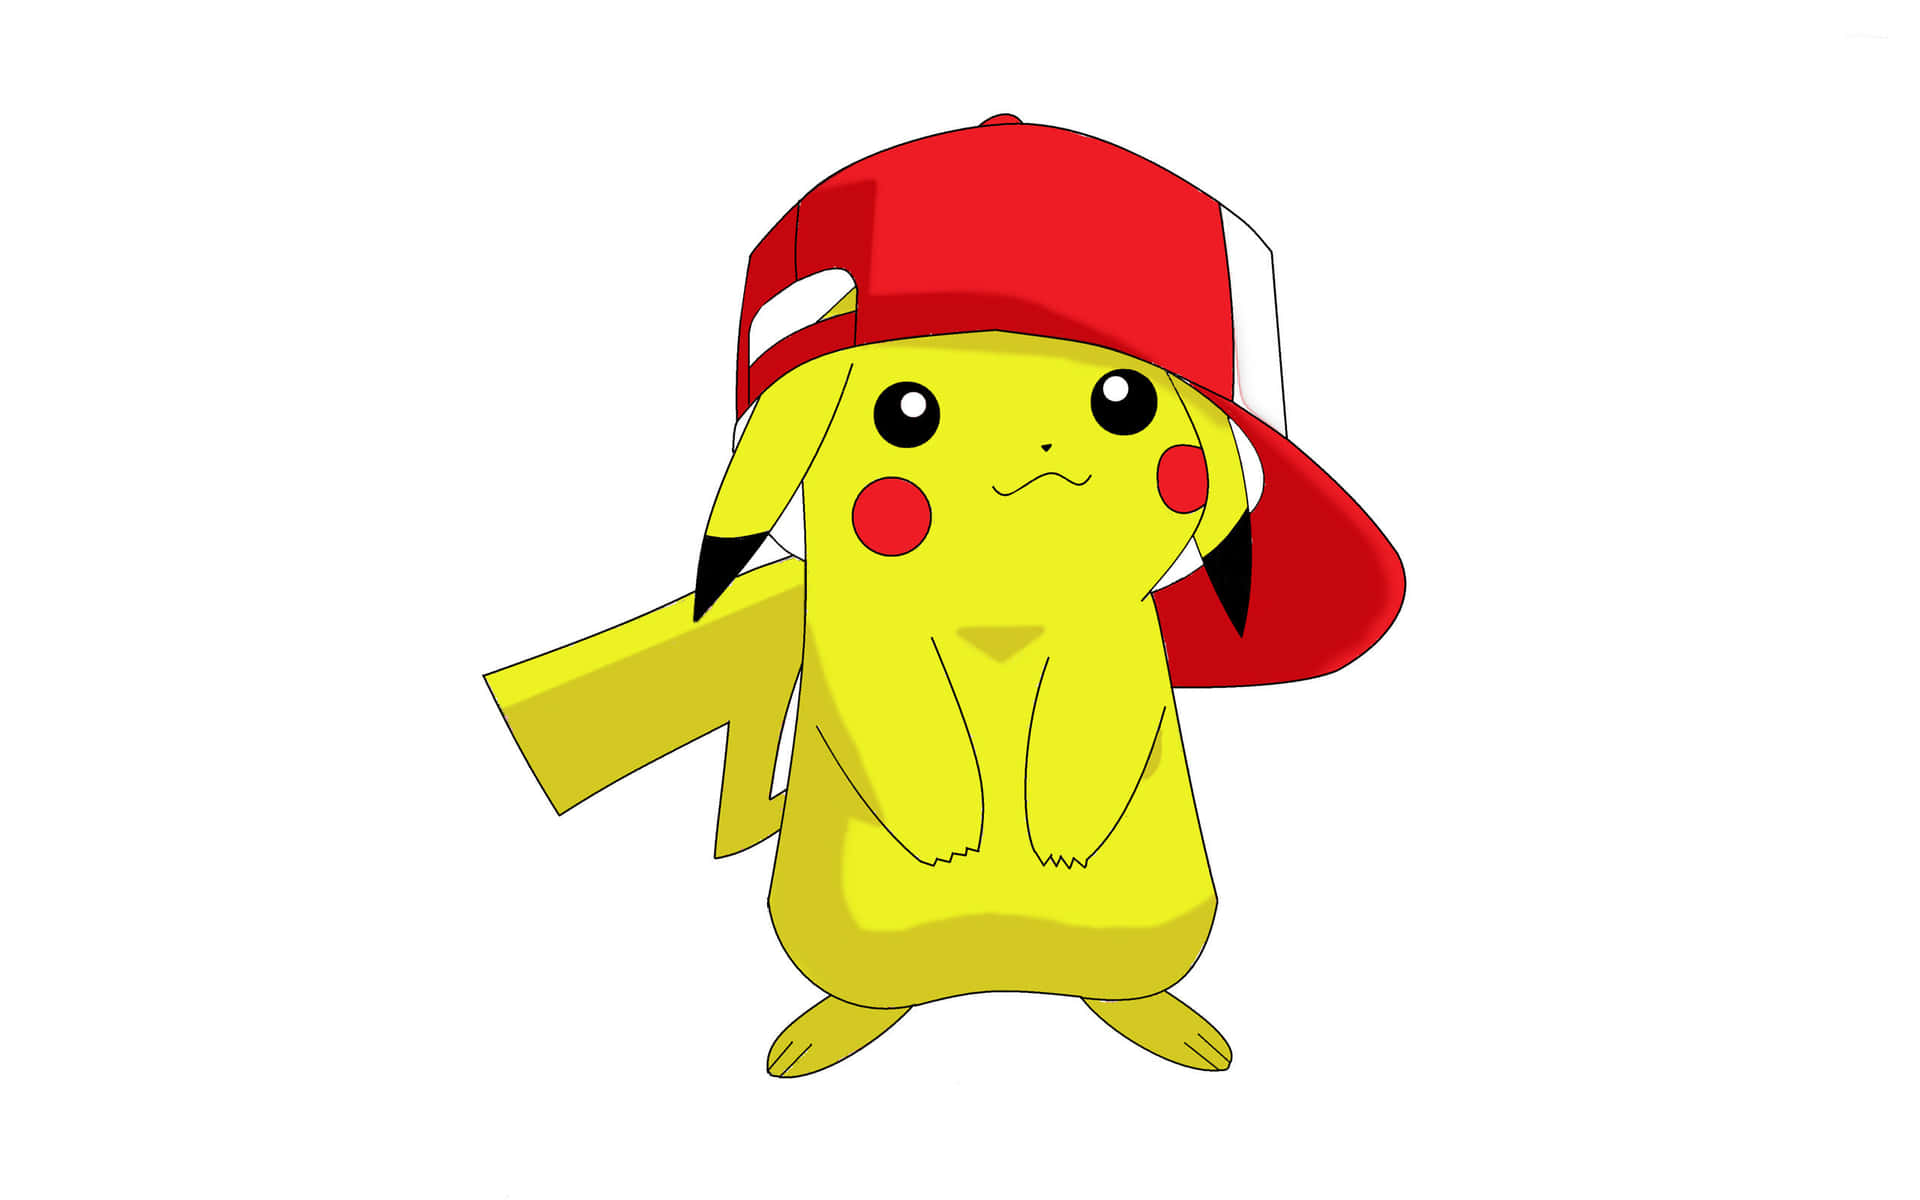 Söthetöverbelastning! Den Här Bebisen Pikachu Är En Bedårande Bunt Av Glädje. Wallpaper